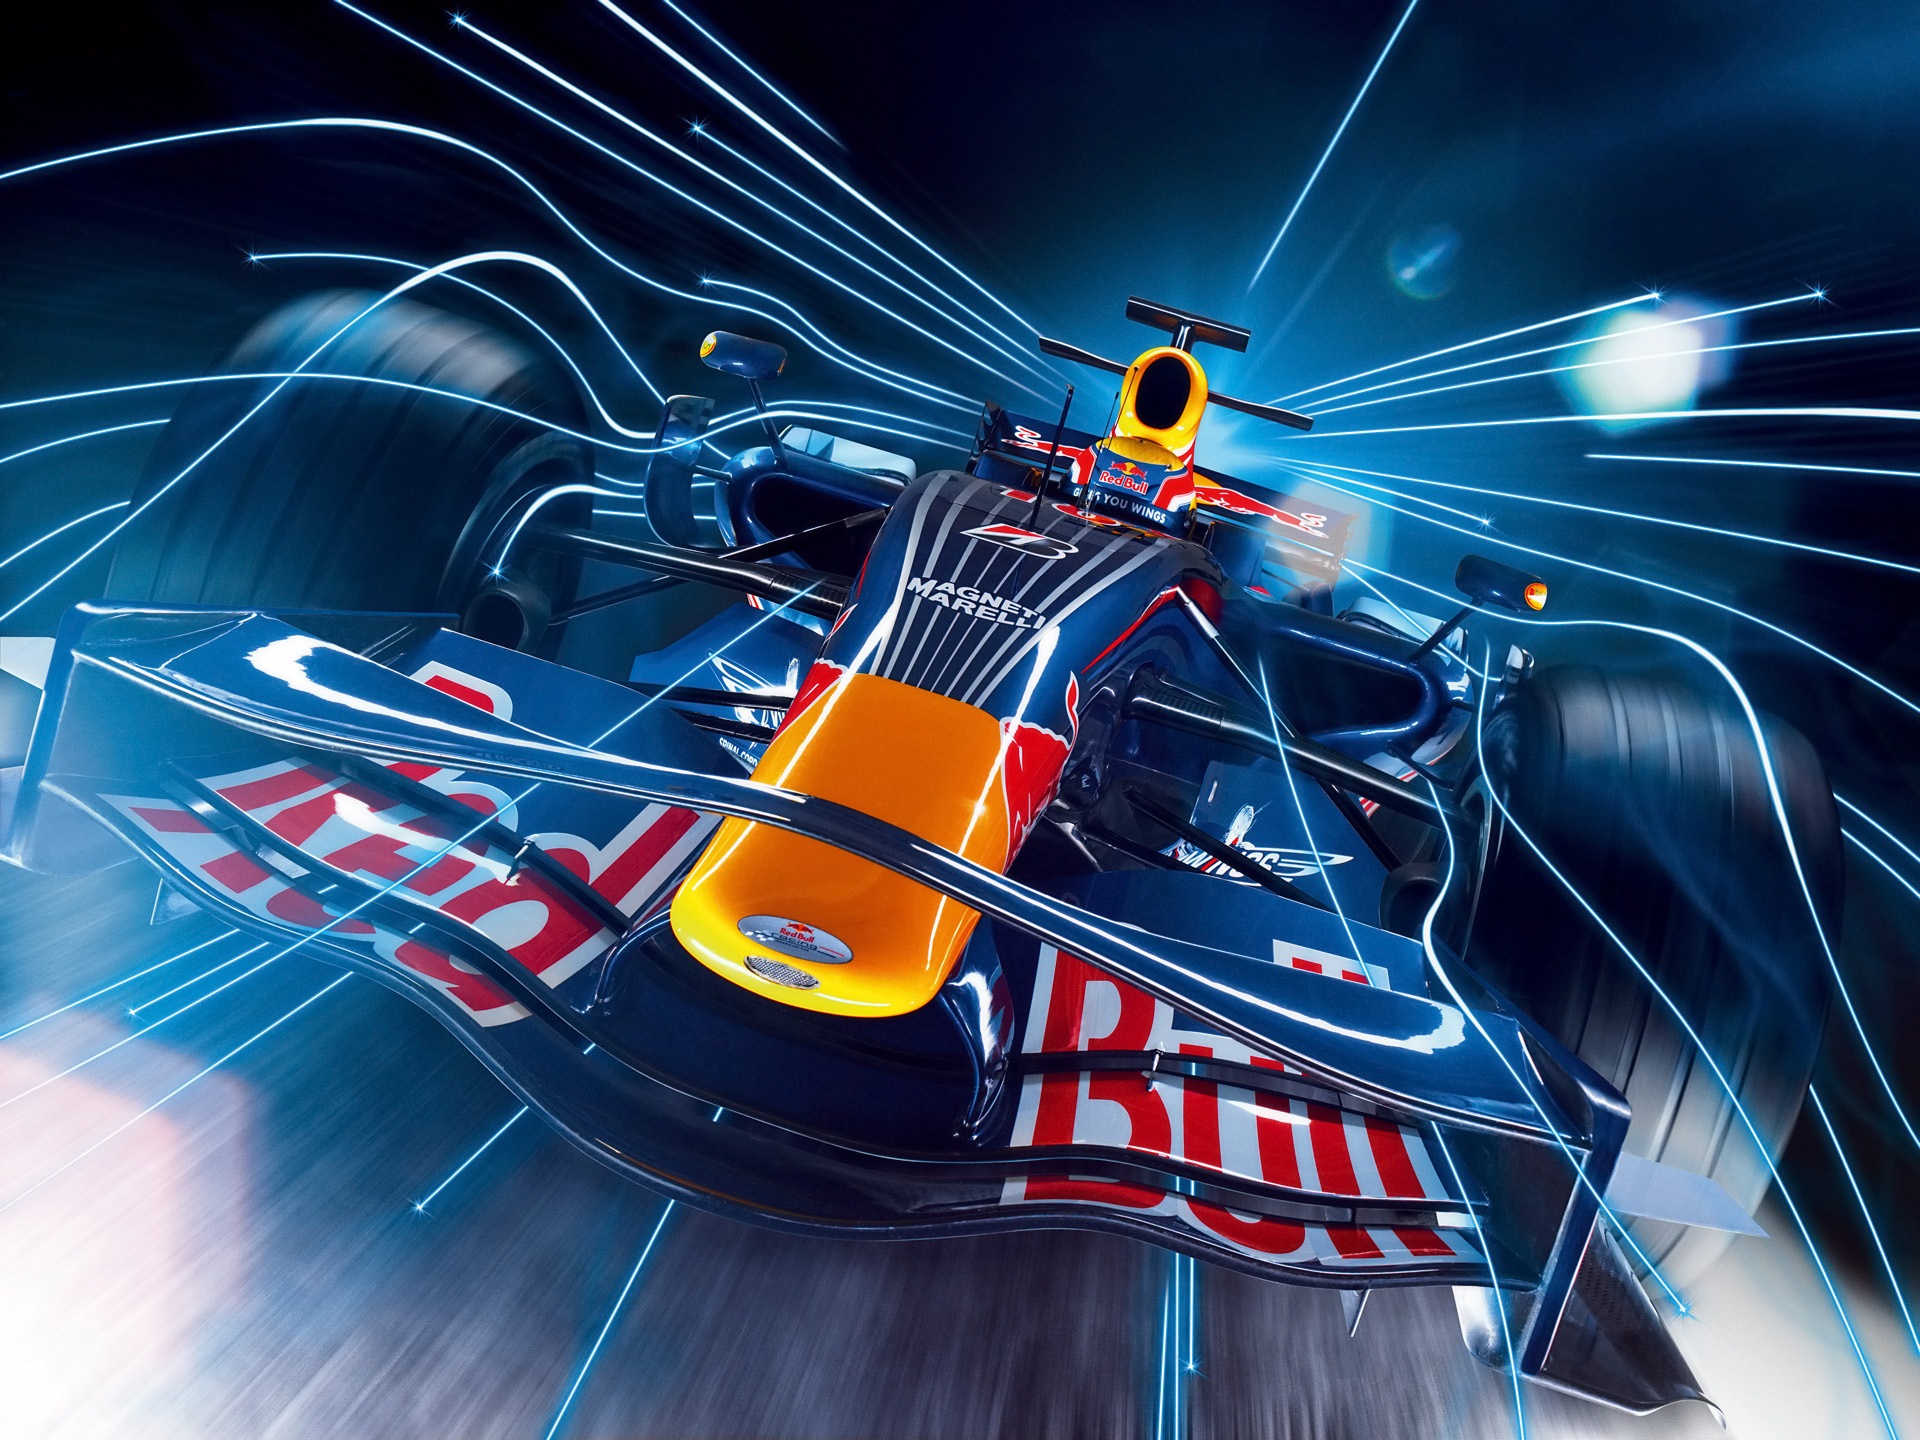 Red Bull Racing Wallpaper Enemiga Publica